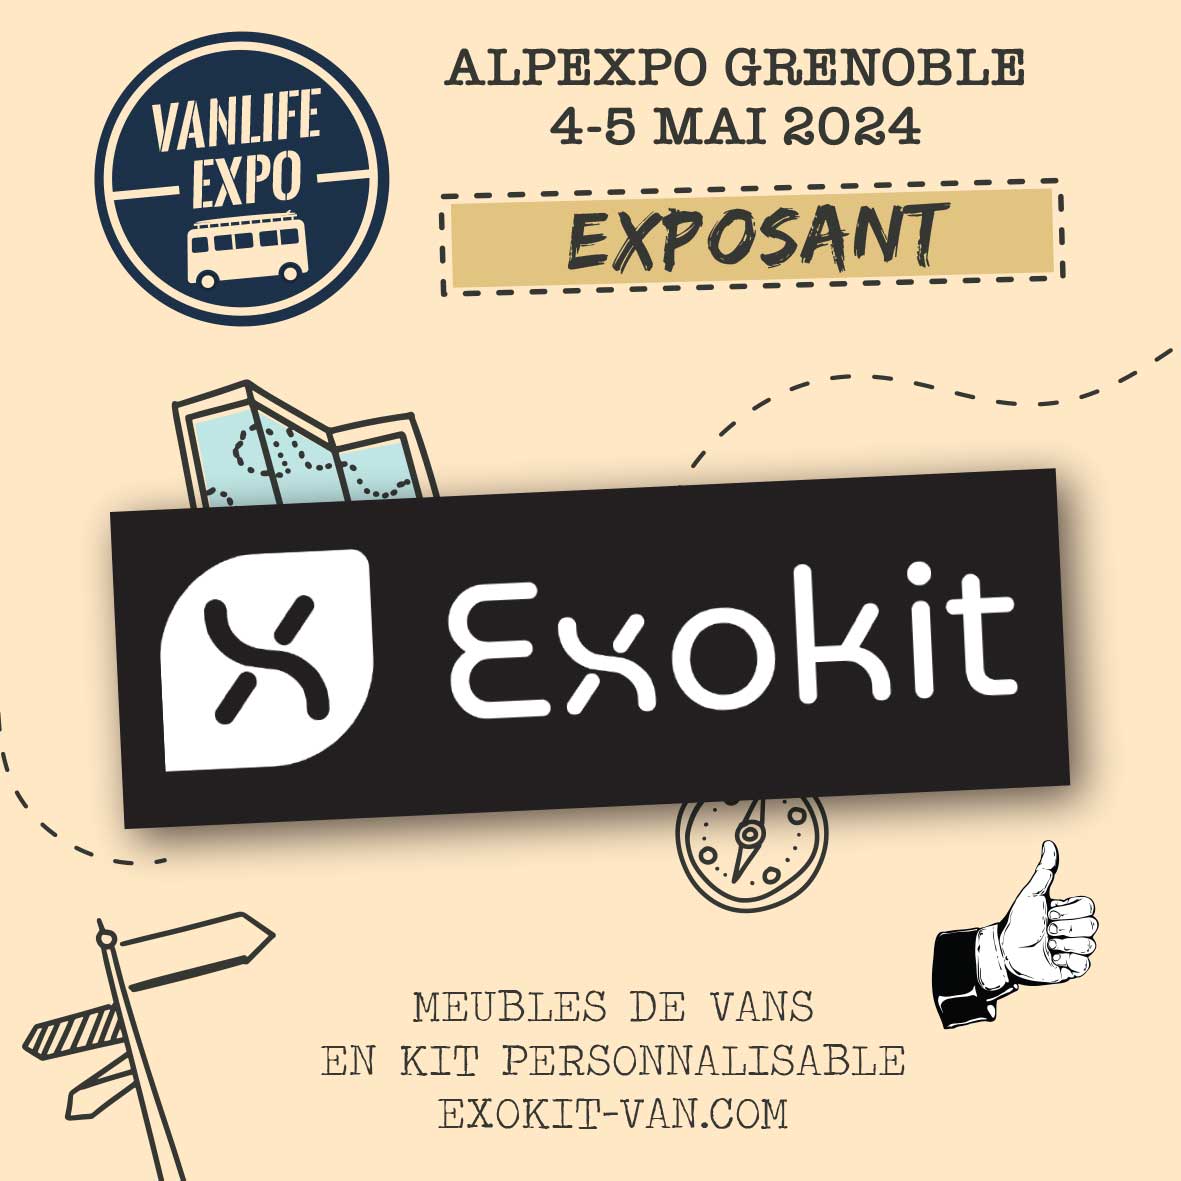 Featured image for “Exokit Van”